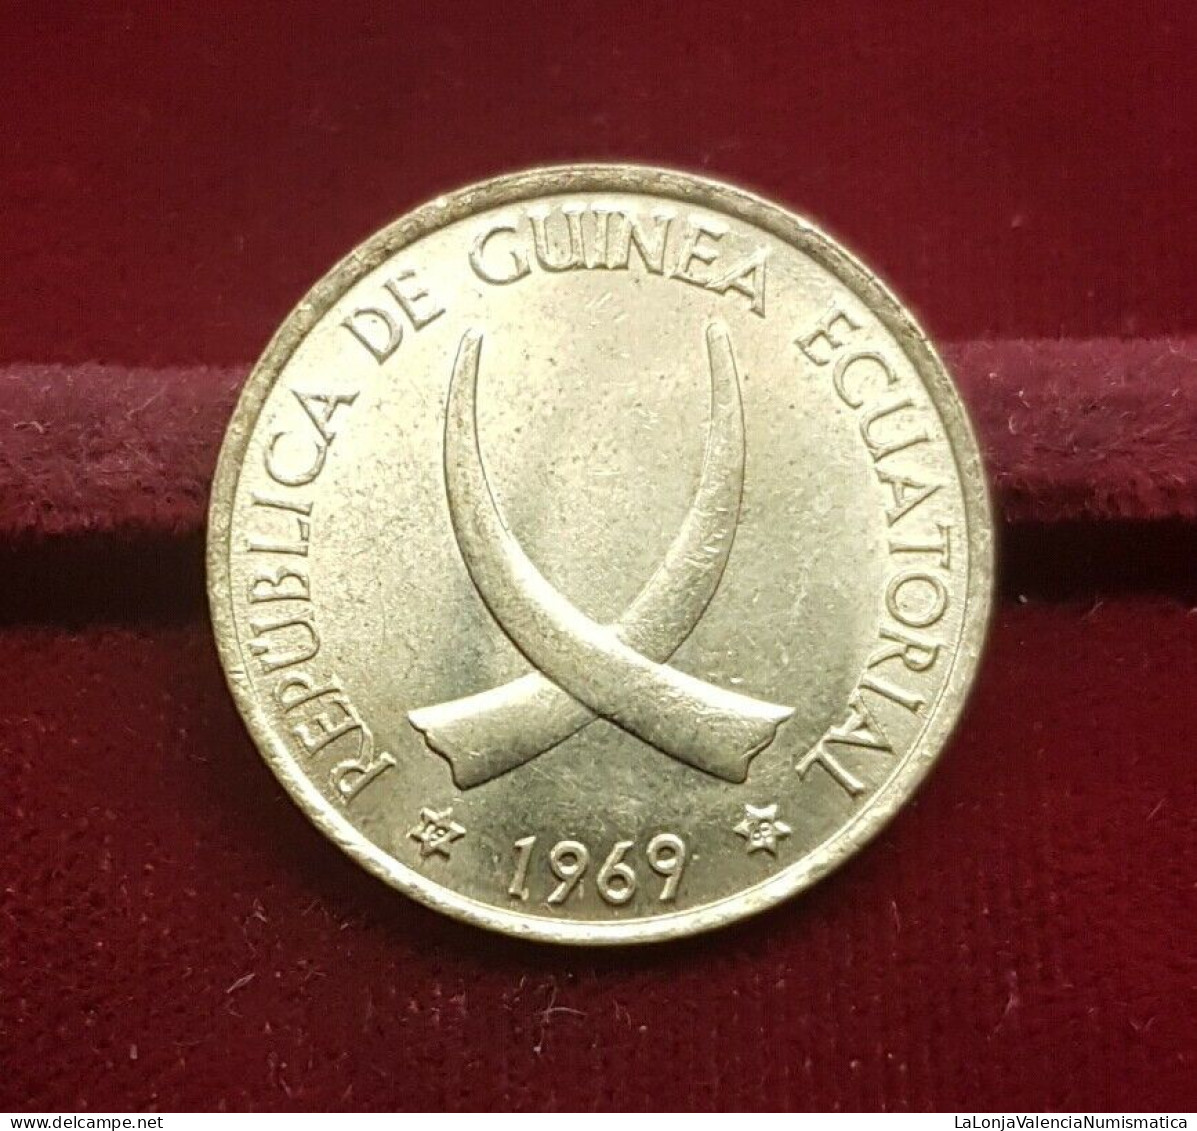 Guinea Ecuatorial Equatorial 1 Peseta Guineana 1969 *69 Km 1 Sc Unc - Equatoriaal Guinea